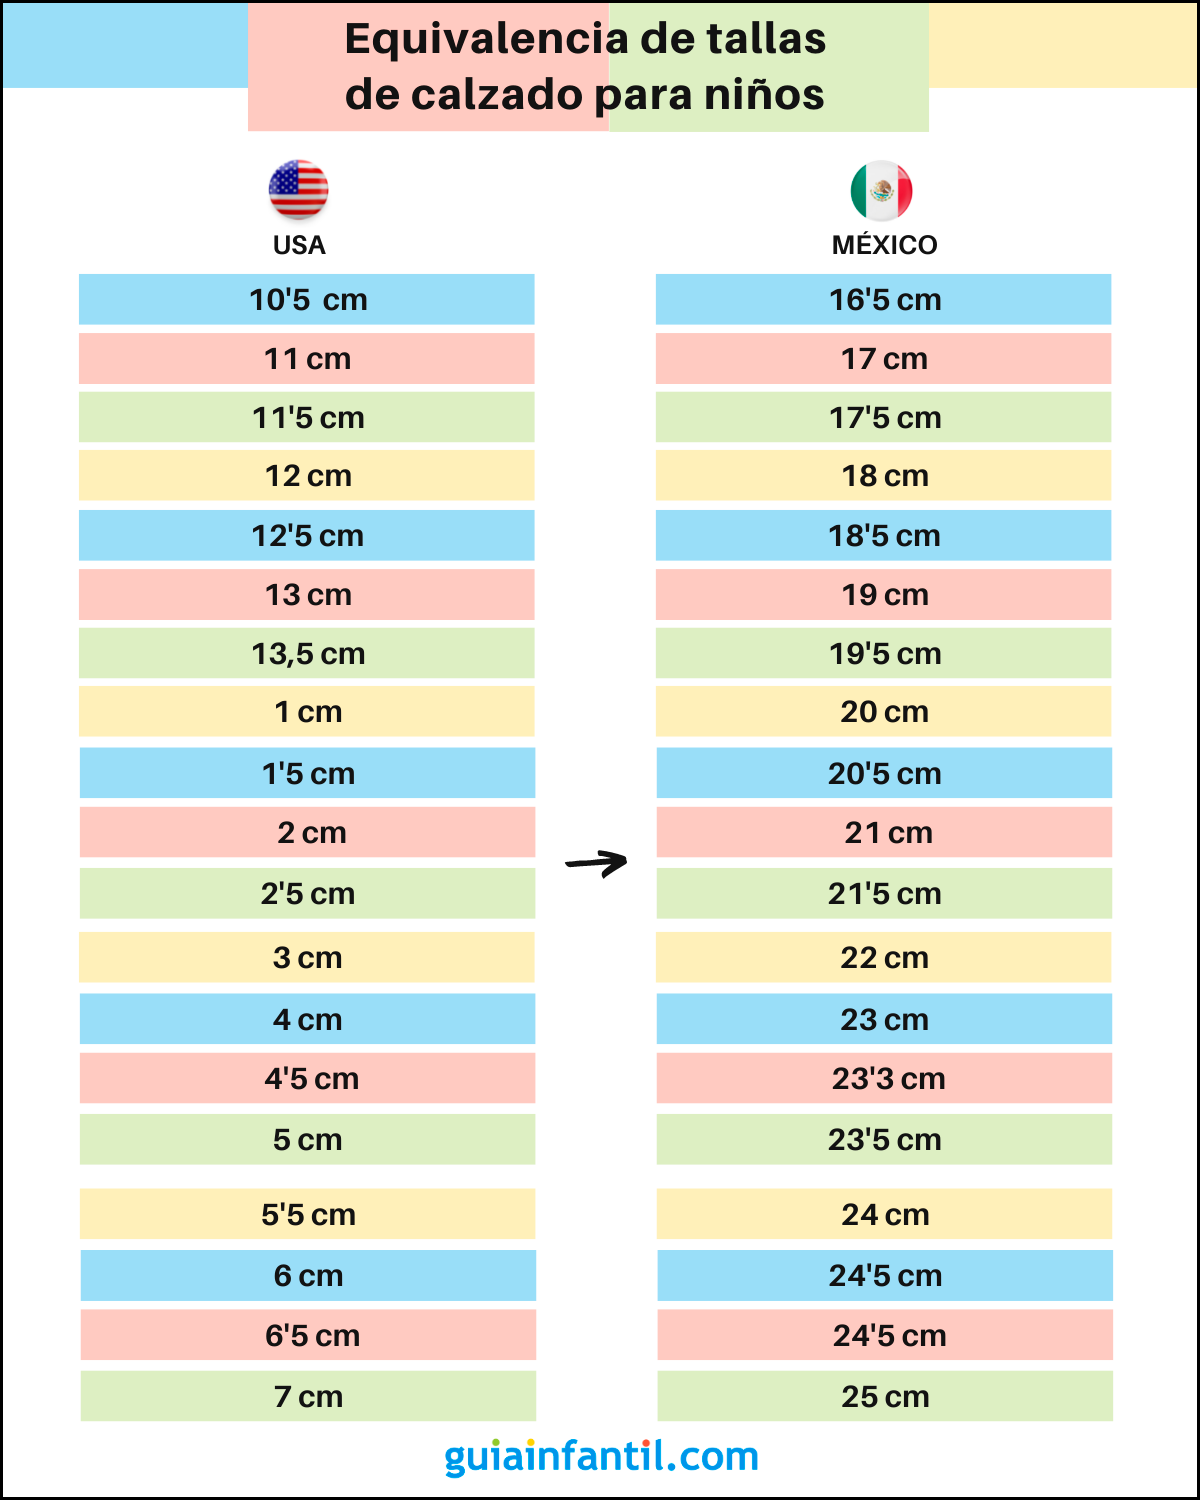 Equivalencia de tallas de ropa para niños Estados Unidos y México